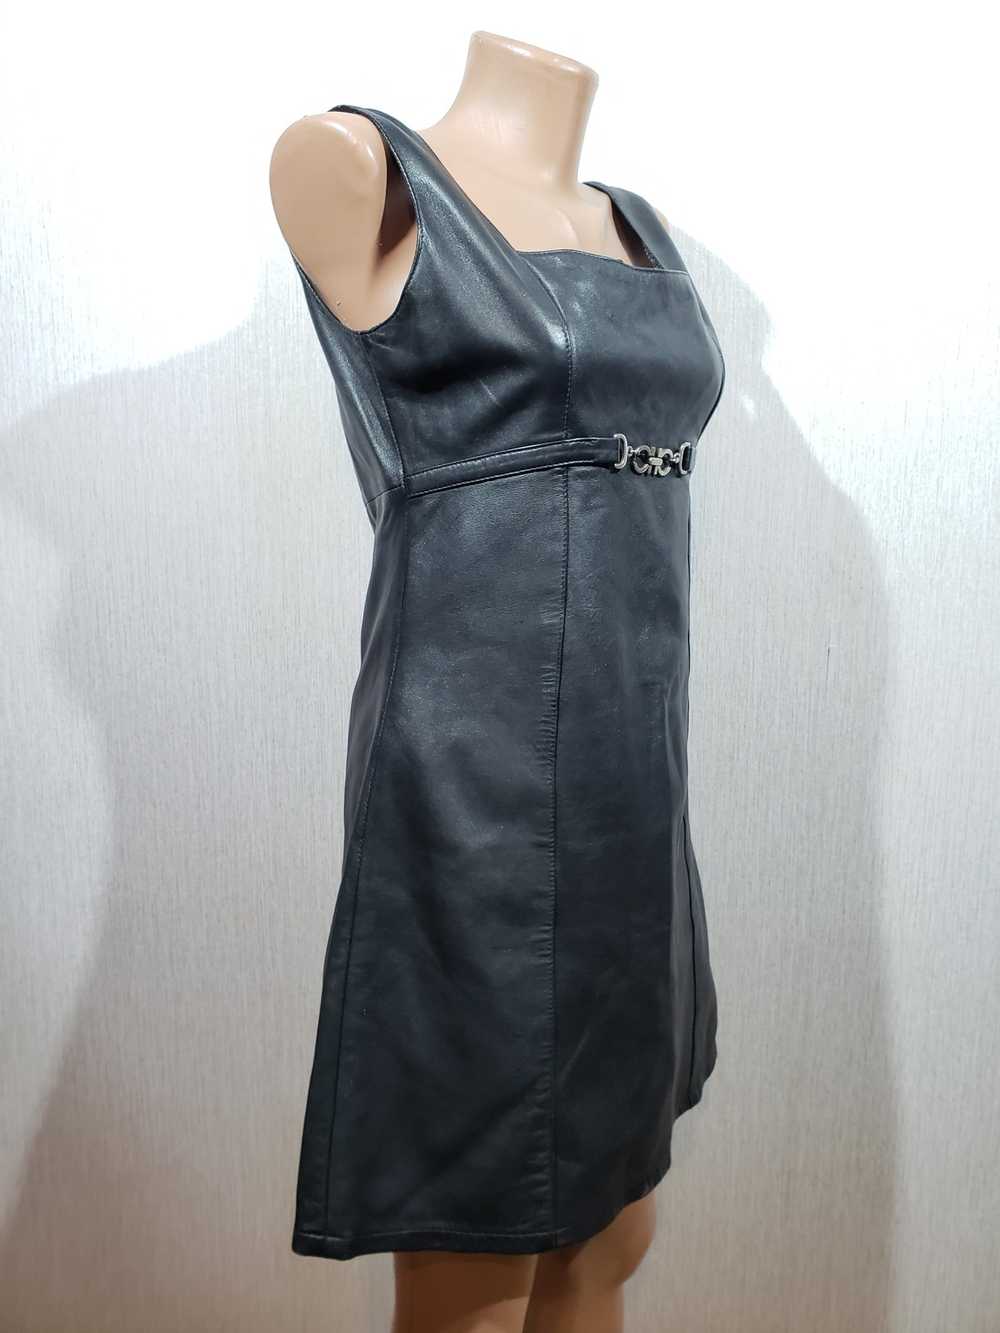 Movie × Rare Stylish black leather dress. - image 2